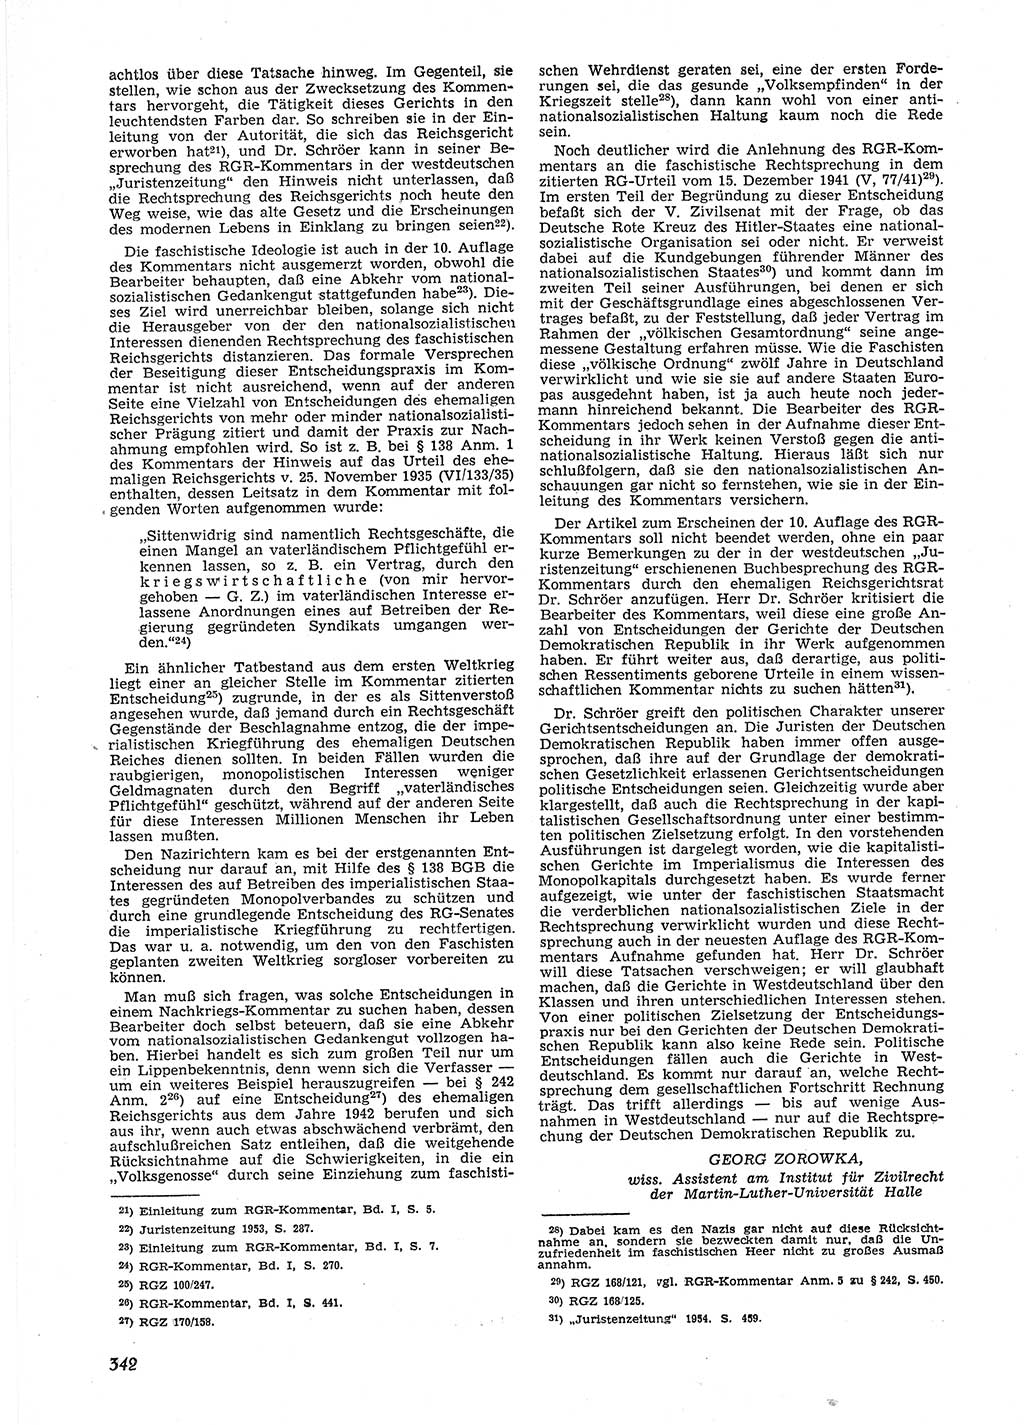 Neue Justiz (NJ), Zeitschrift für Recht und Rechtswissenschaft [Deutsche Demokratische Republik (DDR)], 9. Jahrgang 1955, Seite 342 (NJ DDR 1955, S. 342)